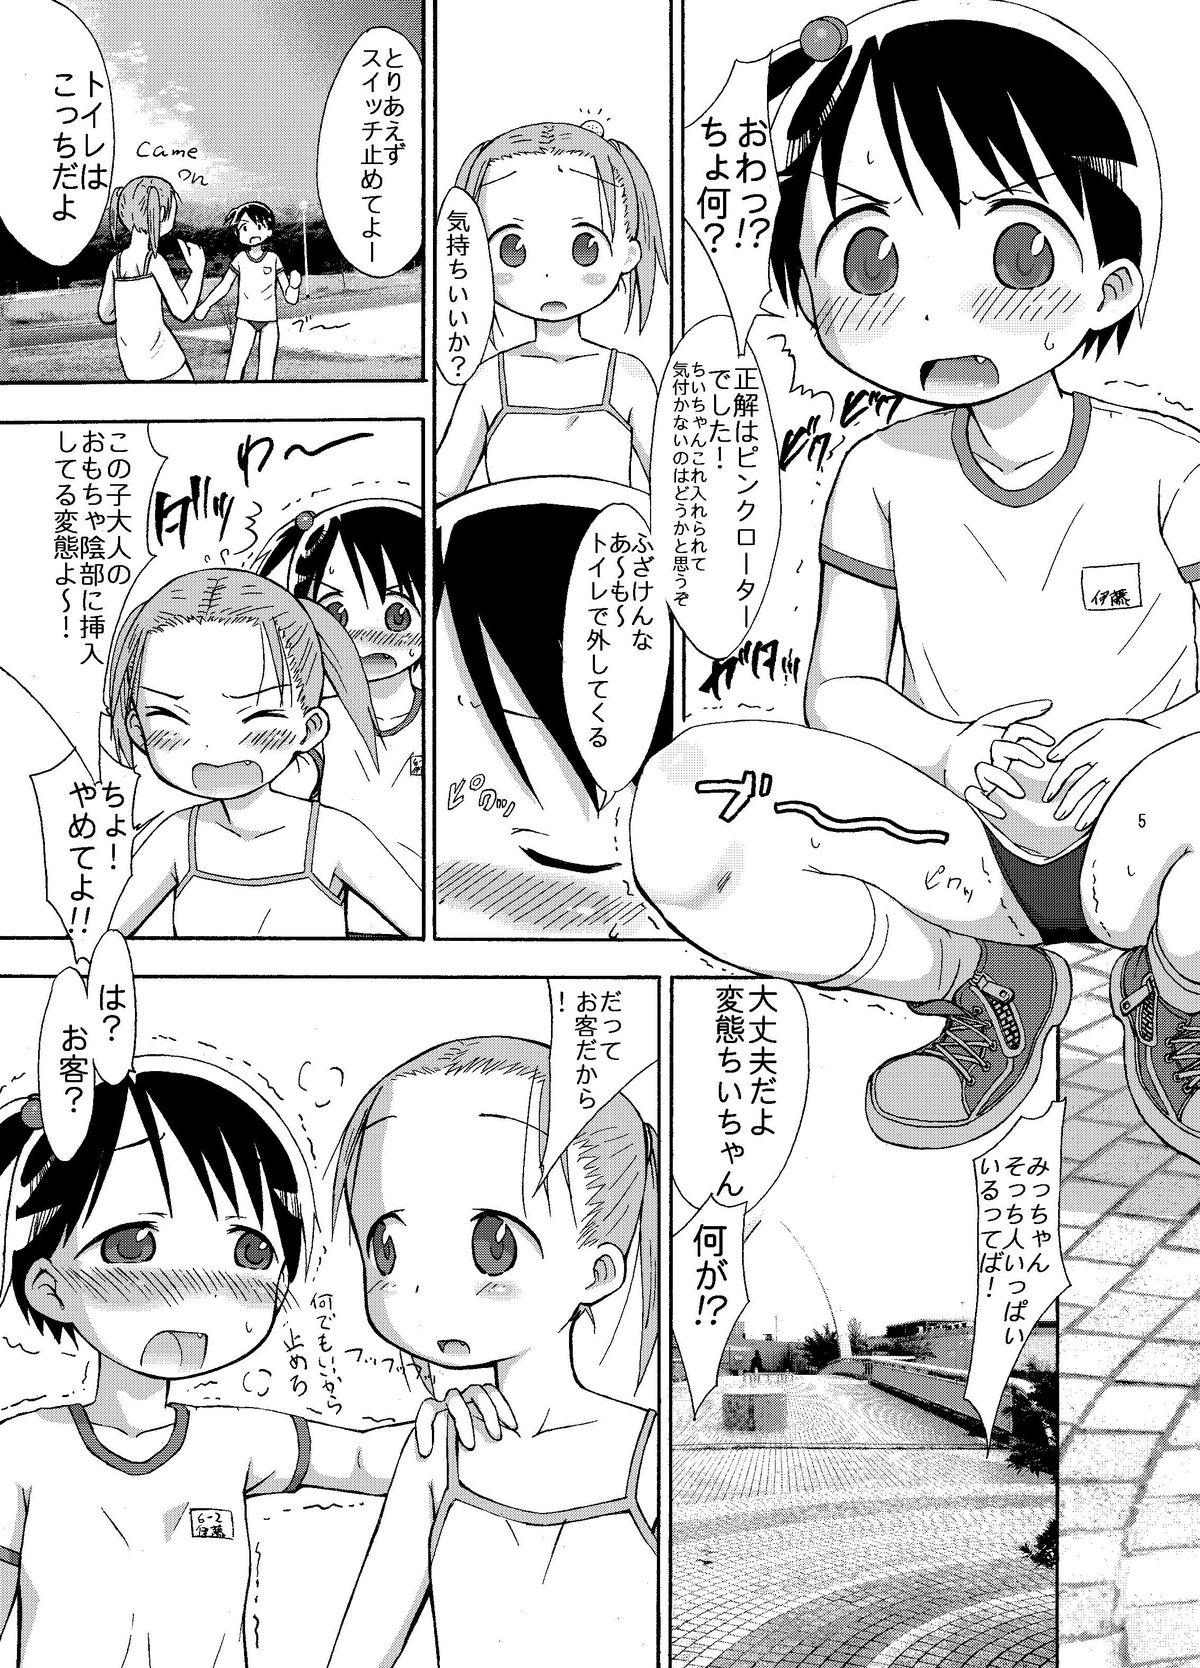 Concha mashimaro ism L - Ichigo mashimaro Gaping - Page 5